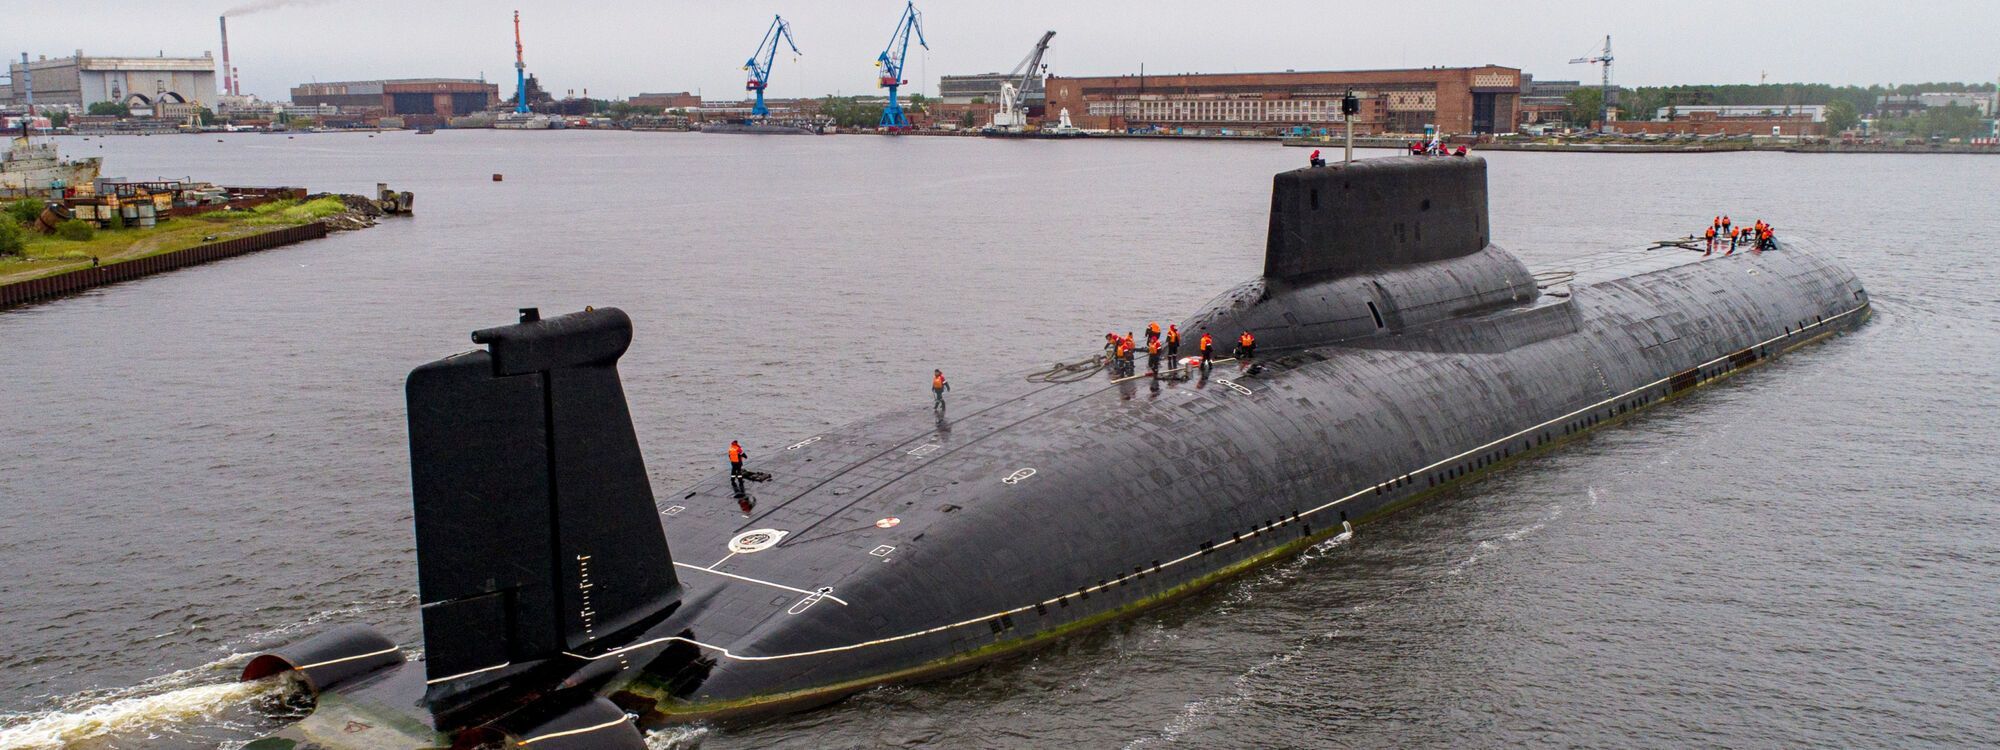 Российская атомная подлодка с ''оружием апокалипсиса'' покинула место базирования - Разведка НАТО